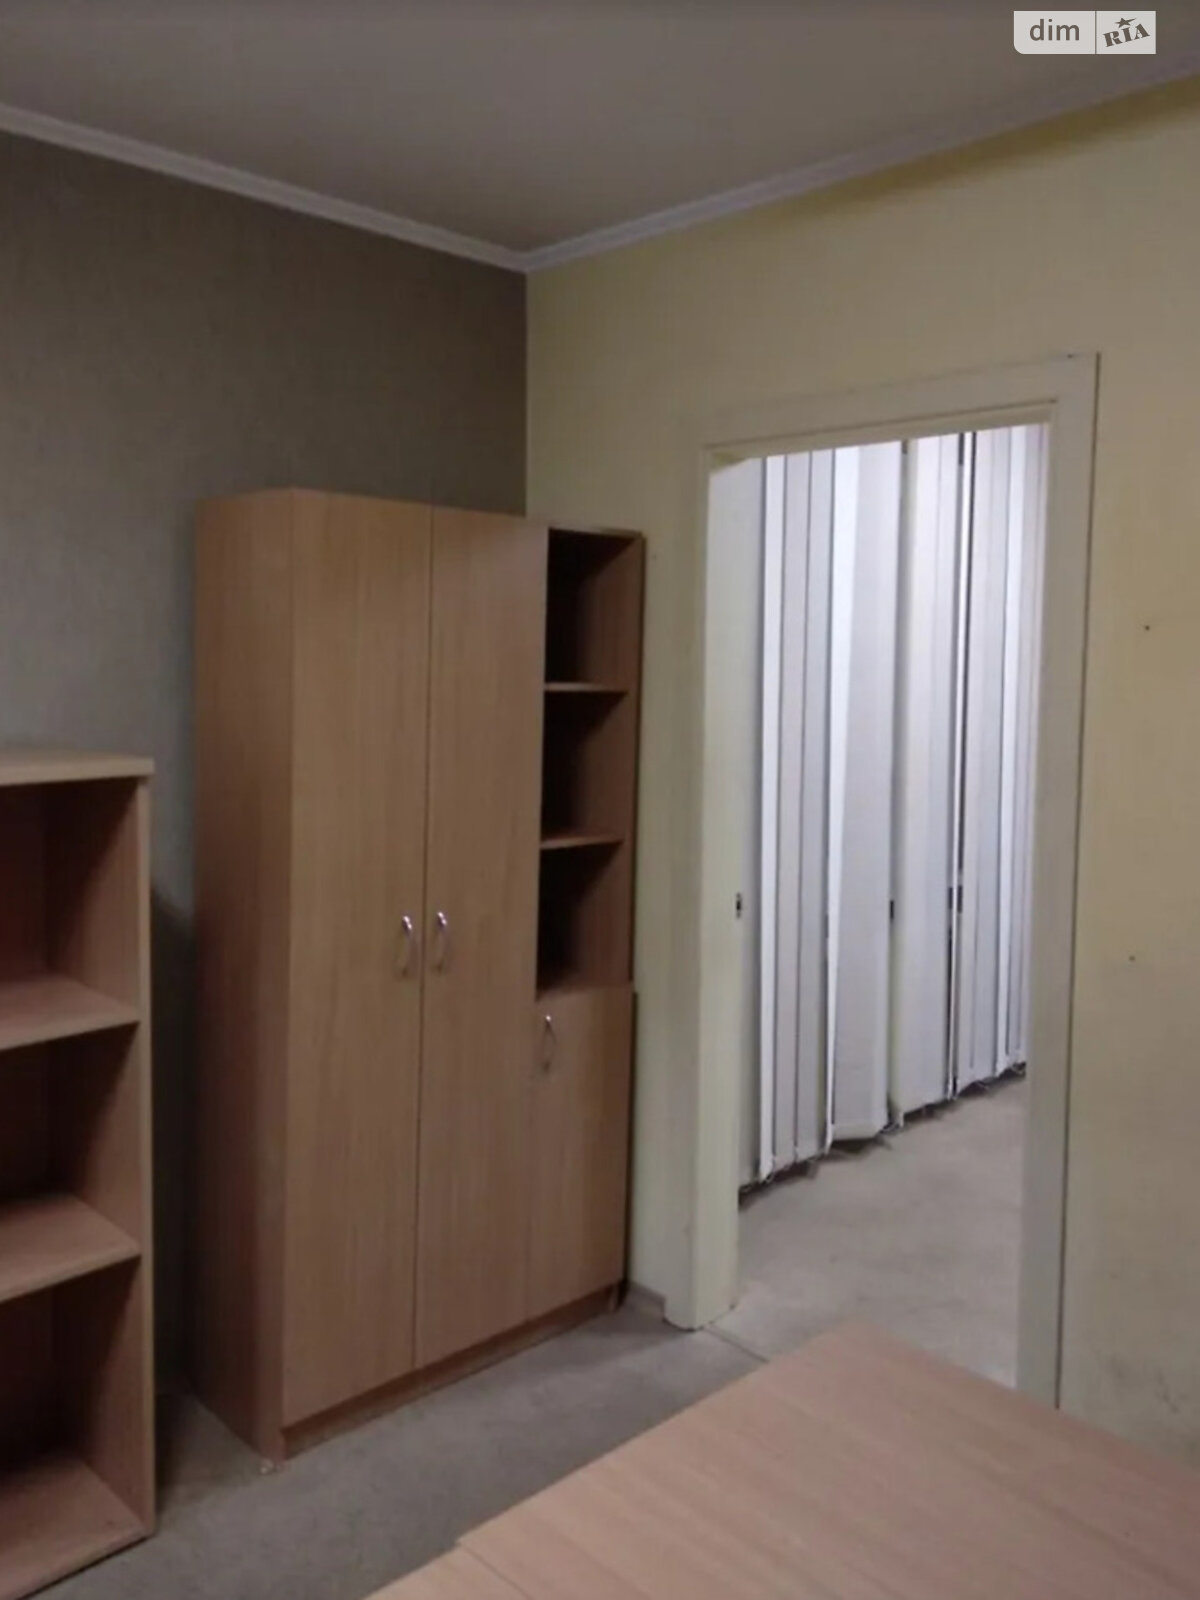 Оренда офісного приміщення в Дніпрі, Слобожанський проспект 85, приміщень - 3, поверх - 1 фото 1